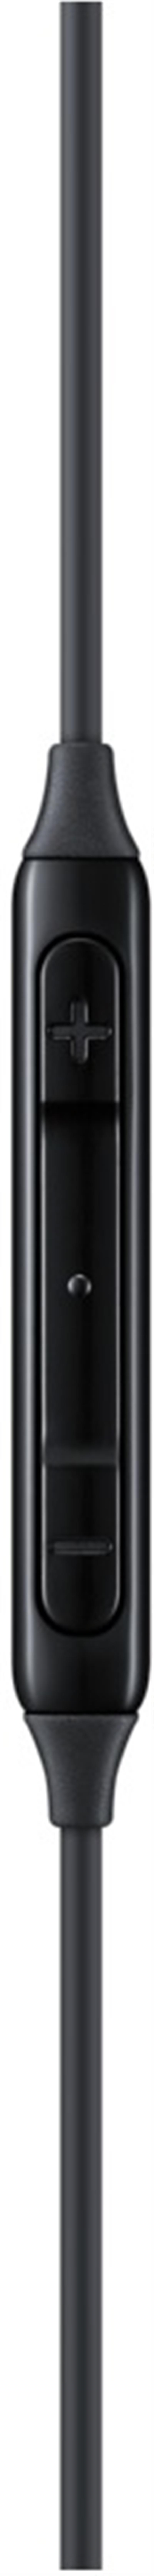 EO-IC100BBEGEU Samsung In-ear Tuned by AKG USB-C Stereo Headset Black Bulk